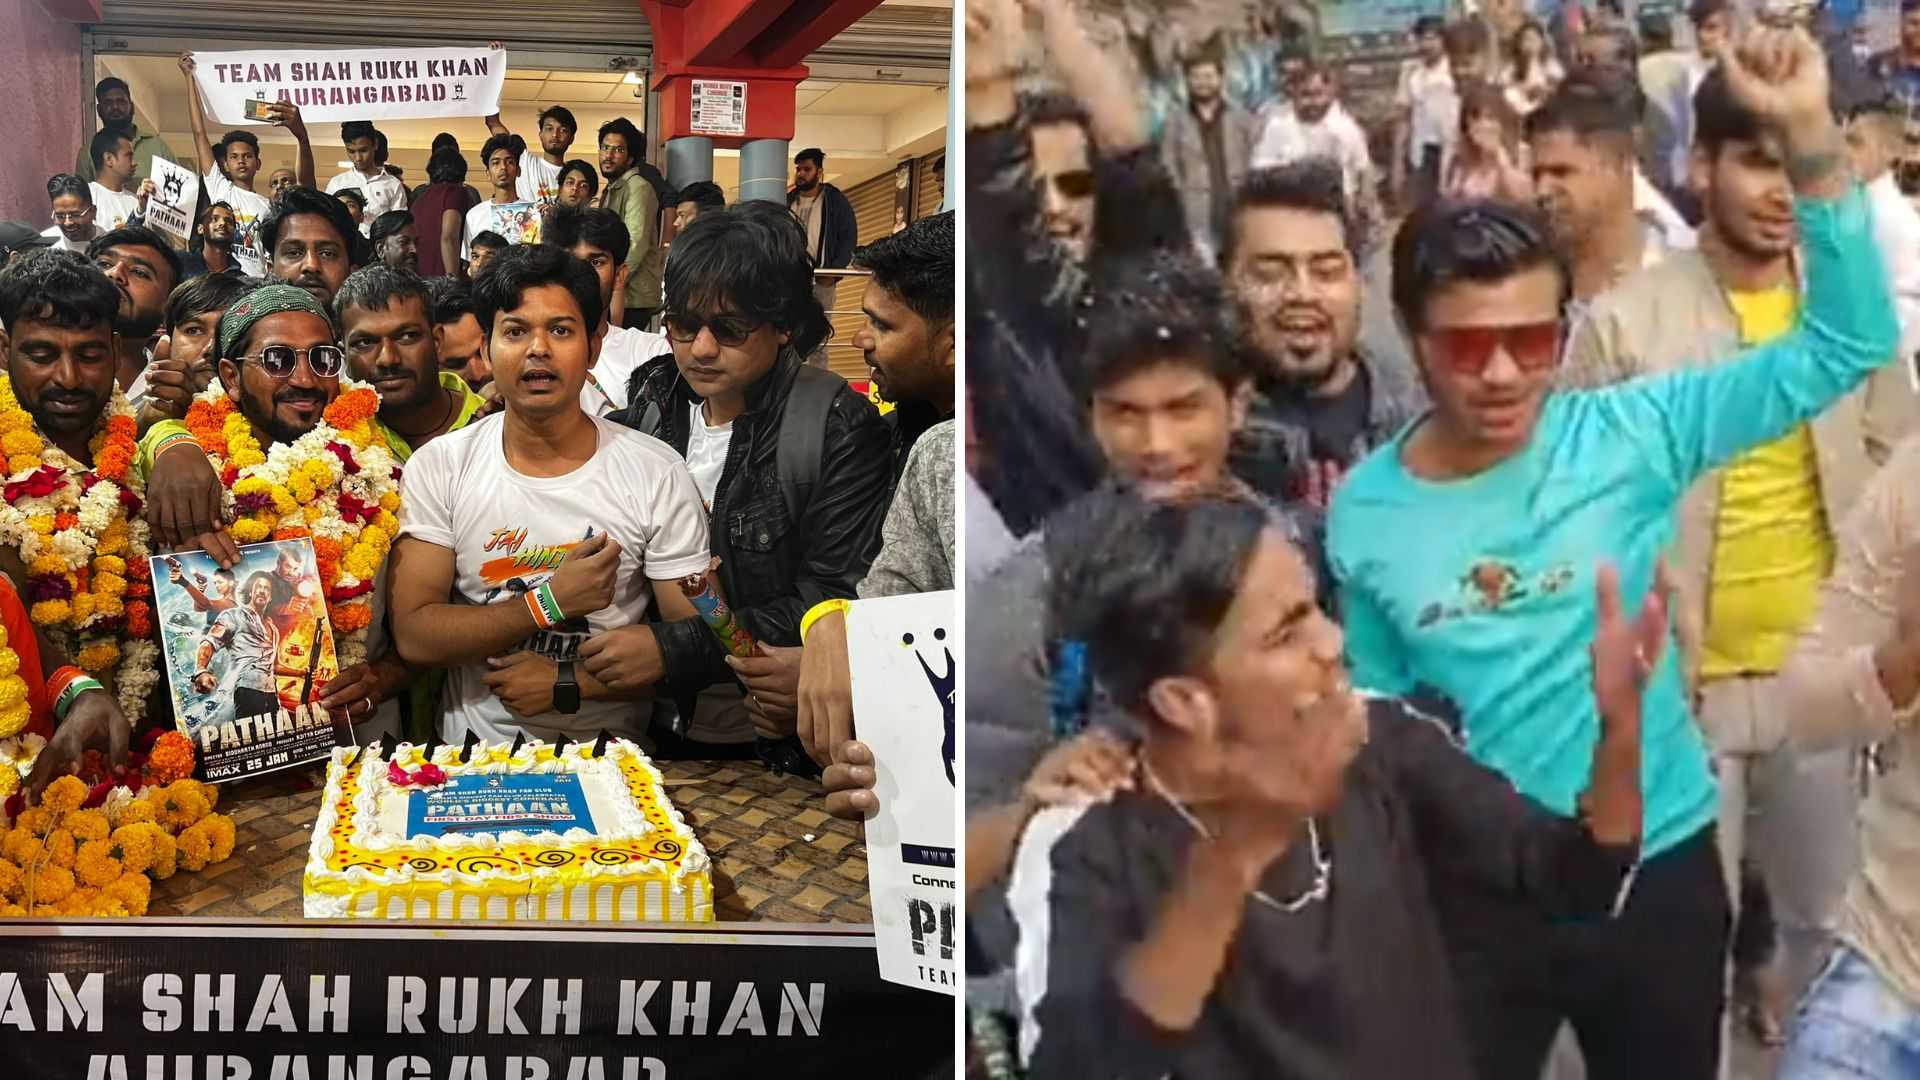 पठान के विरोध के बीच फैंस ने लगाए 'लव यू शाहरुख' के नारे, केक काट कर मनाया जश्न